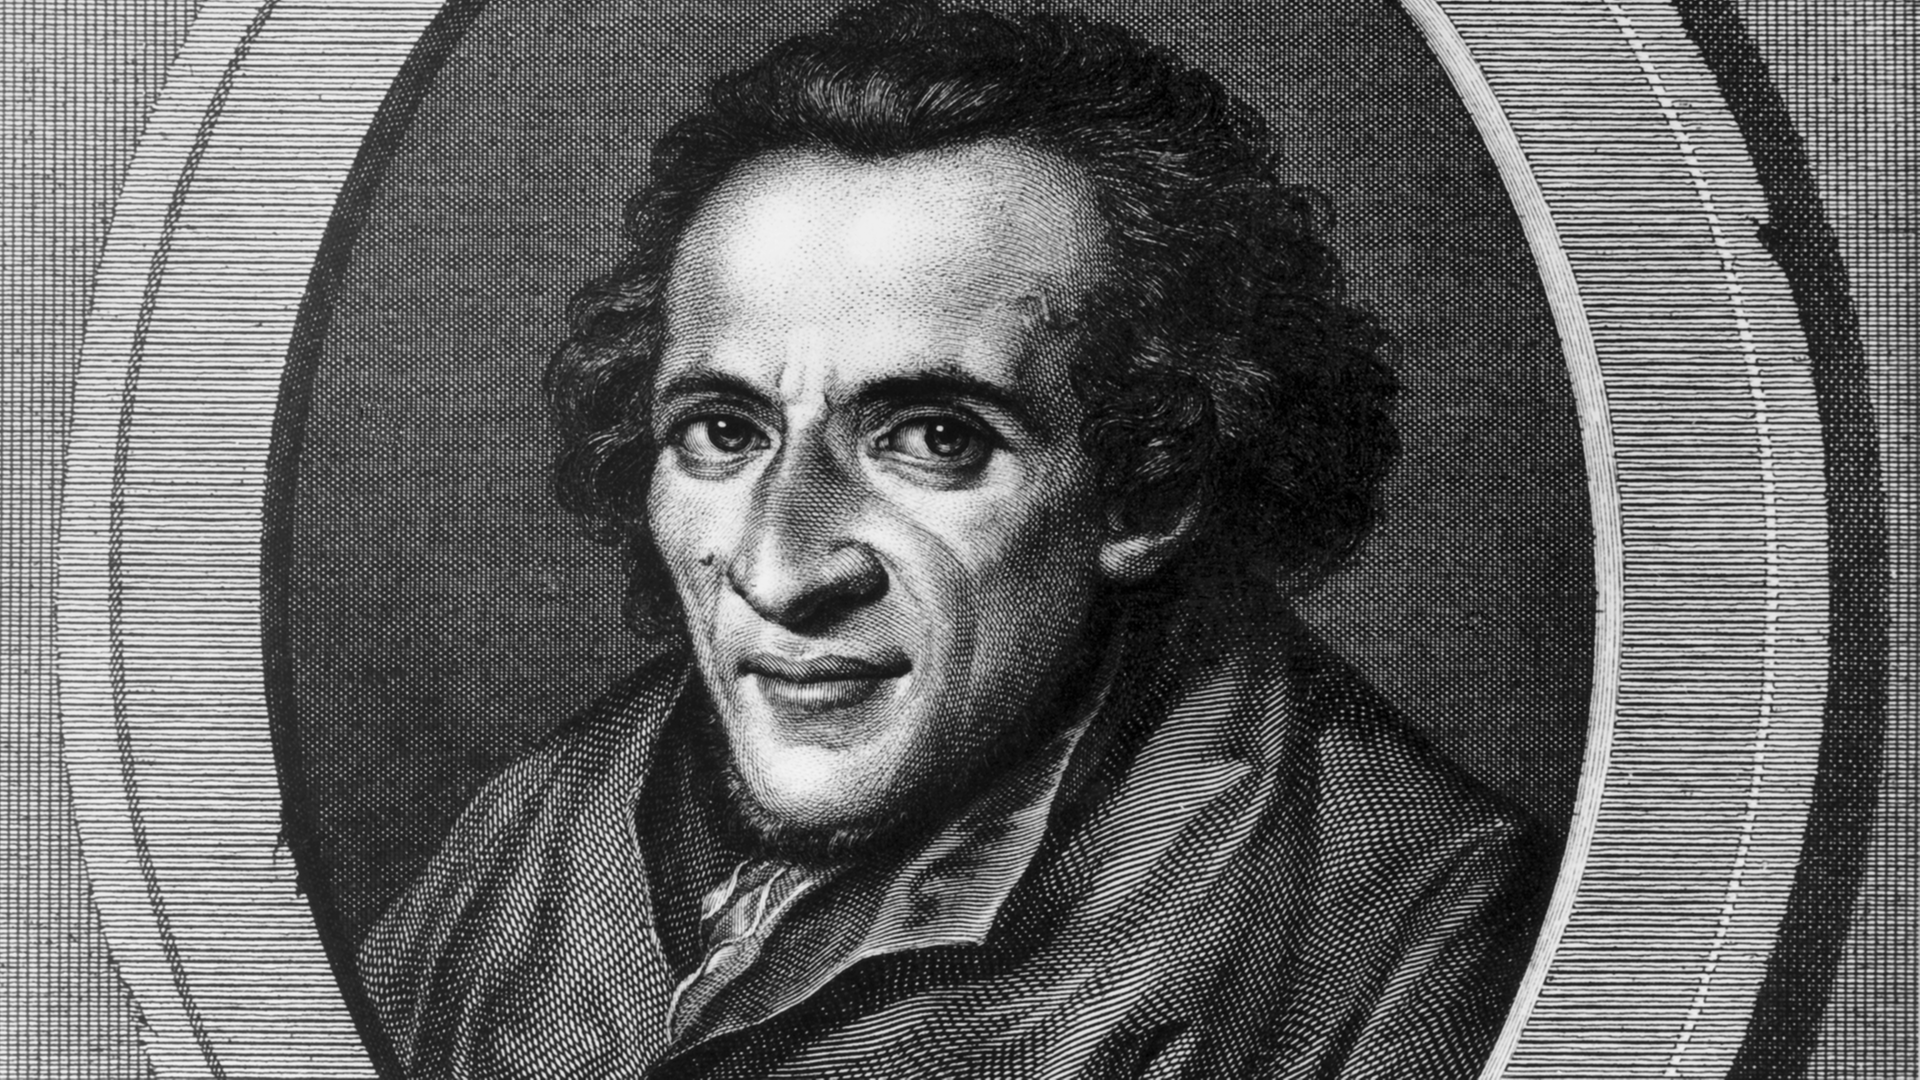 Undatiertes, zeitgenössisches Bildnis des deutsch-jüdischen Philosophen Moses Mendelssohn. Er wurde am 06.09.1729 in Dessau geboren und starb am 04.01.1786 in Berlin. Mendelssohn war der Wegbereiter der jüdischen Aufklärung (Haskala).